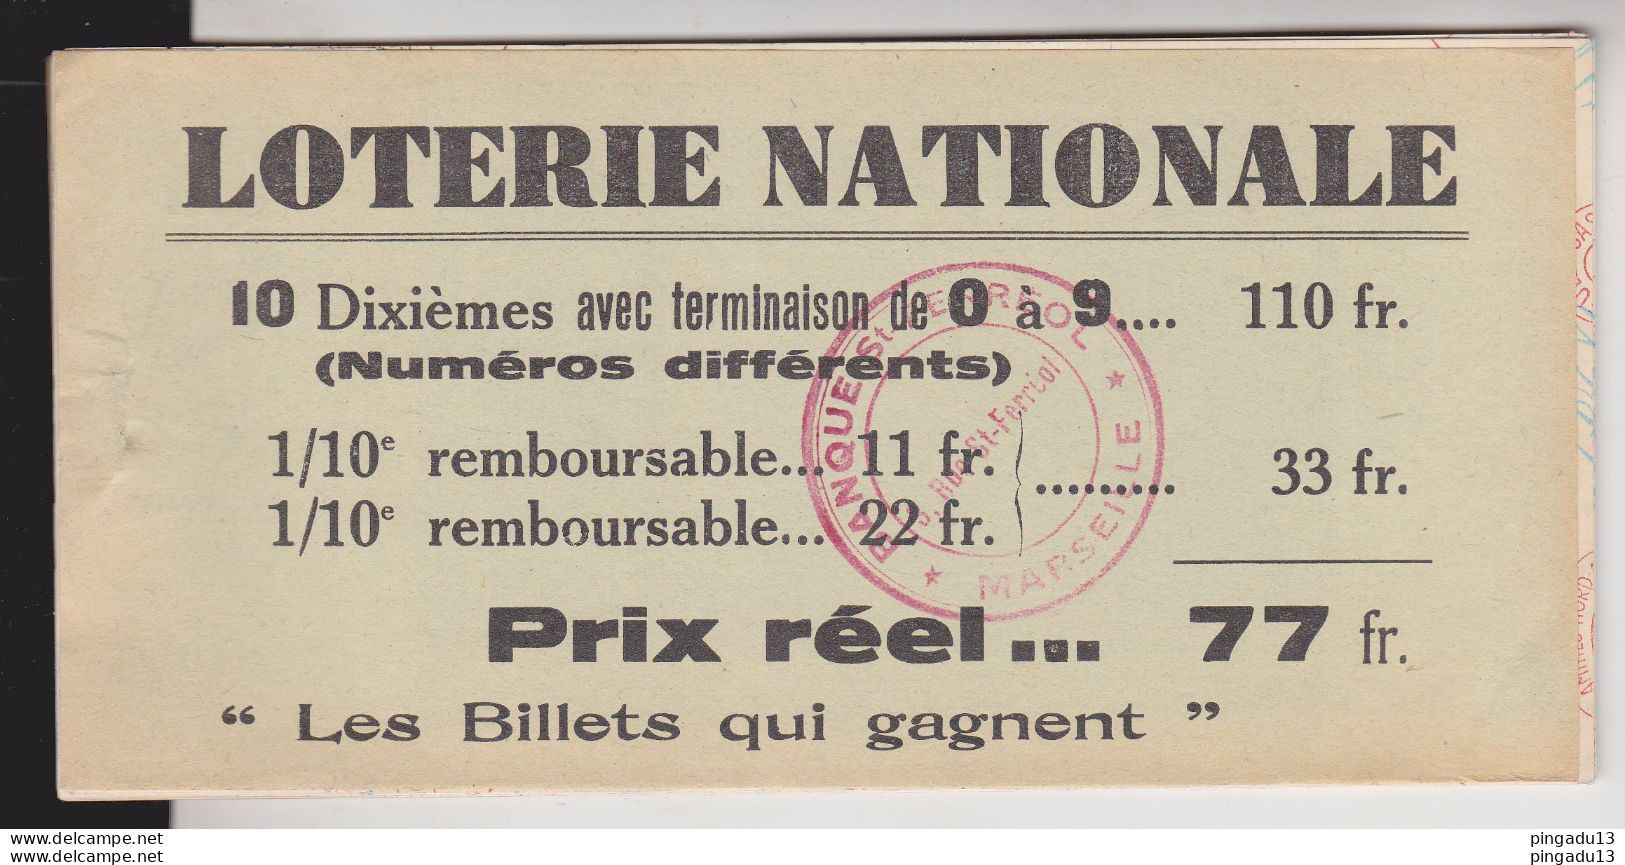 Fixe France Loterie Nationale Carnet De 8 Billets 1940 5 ème Tranche Gueules Cassées Très Bon état - Billetes De Lotería